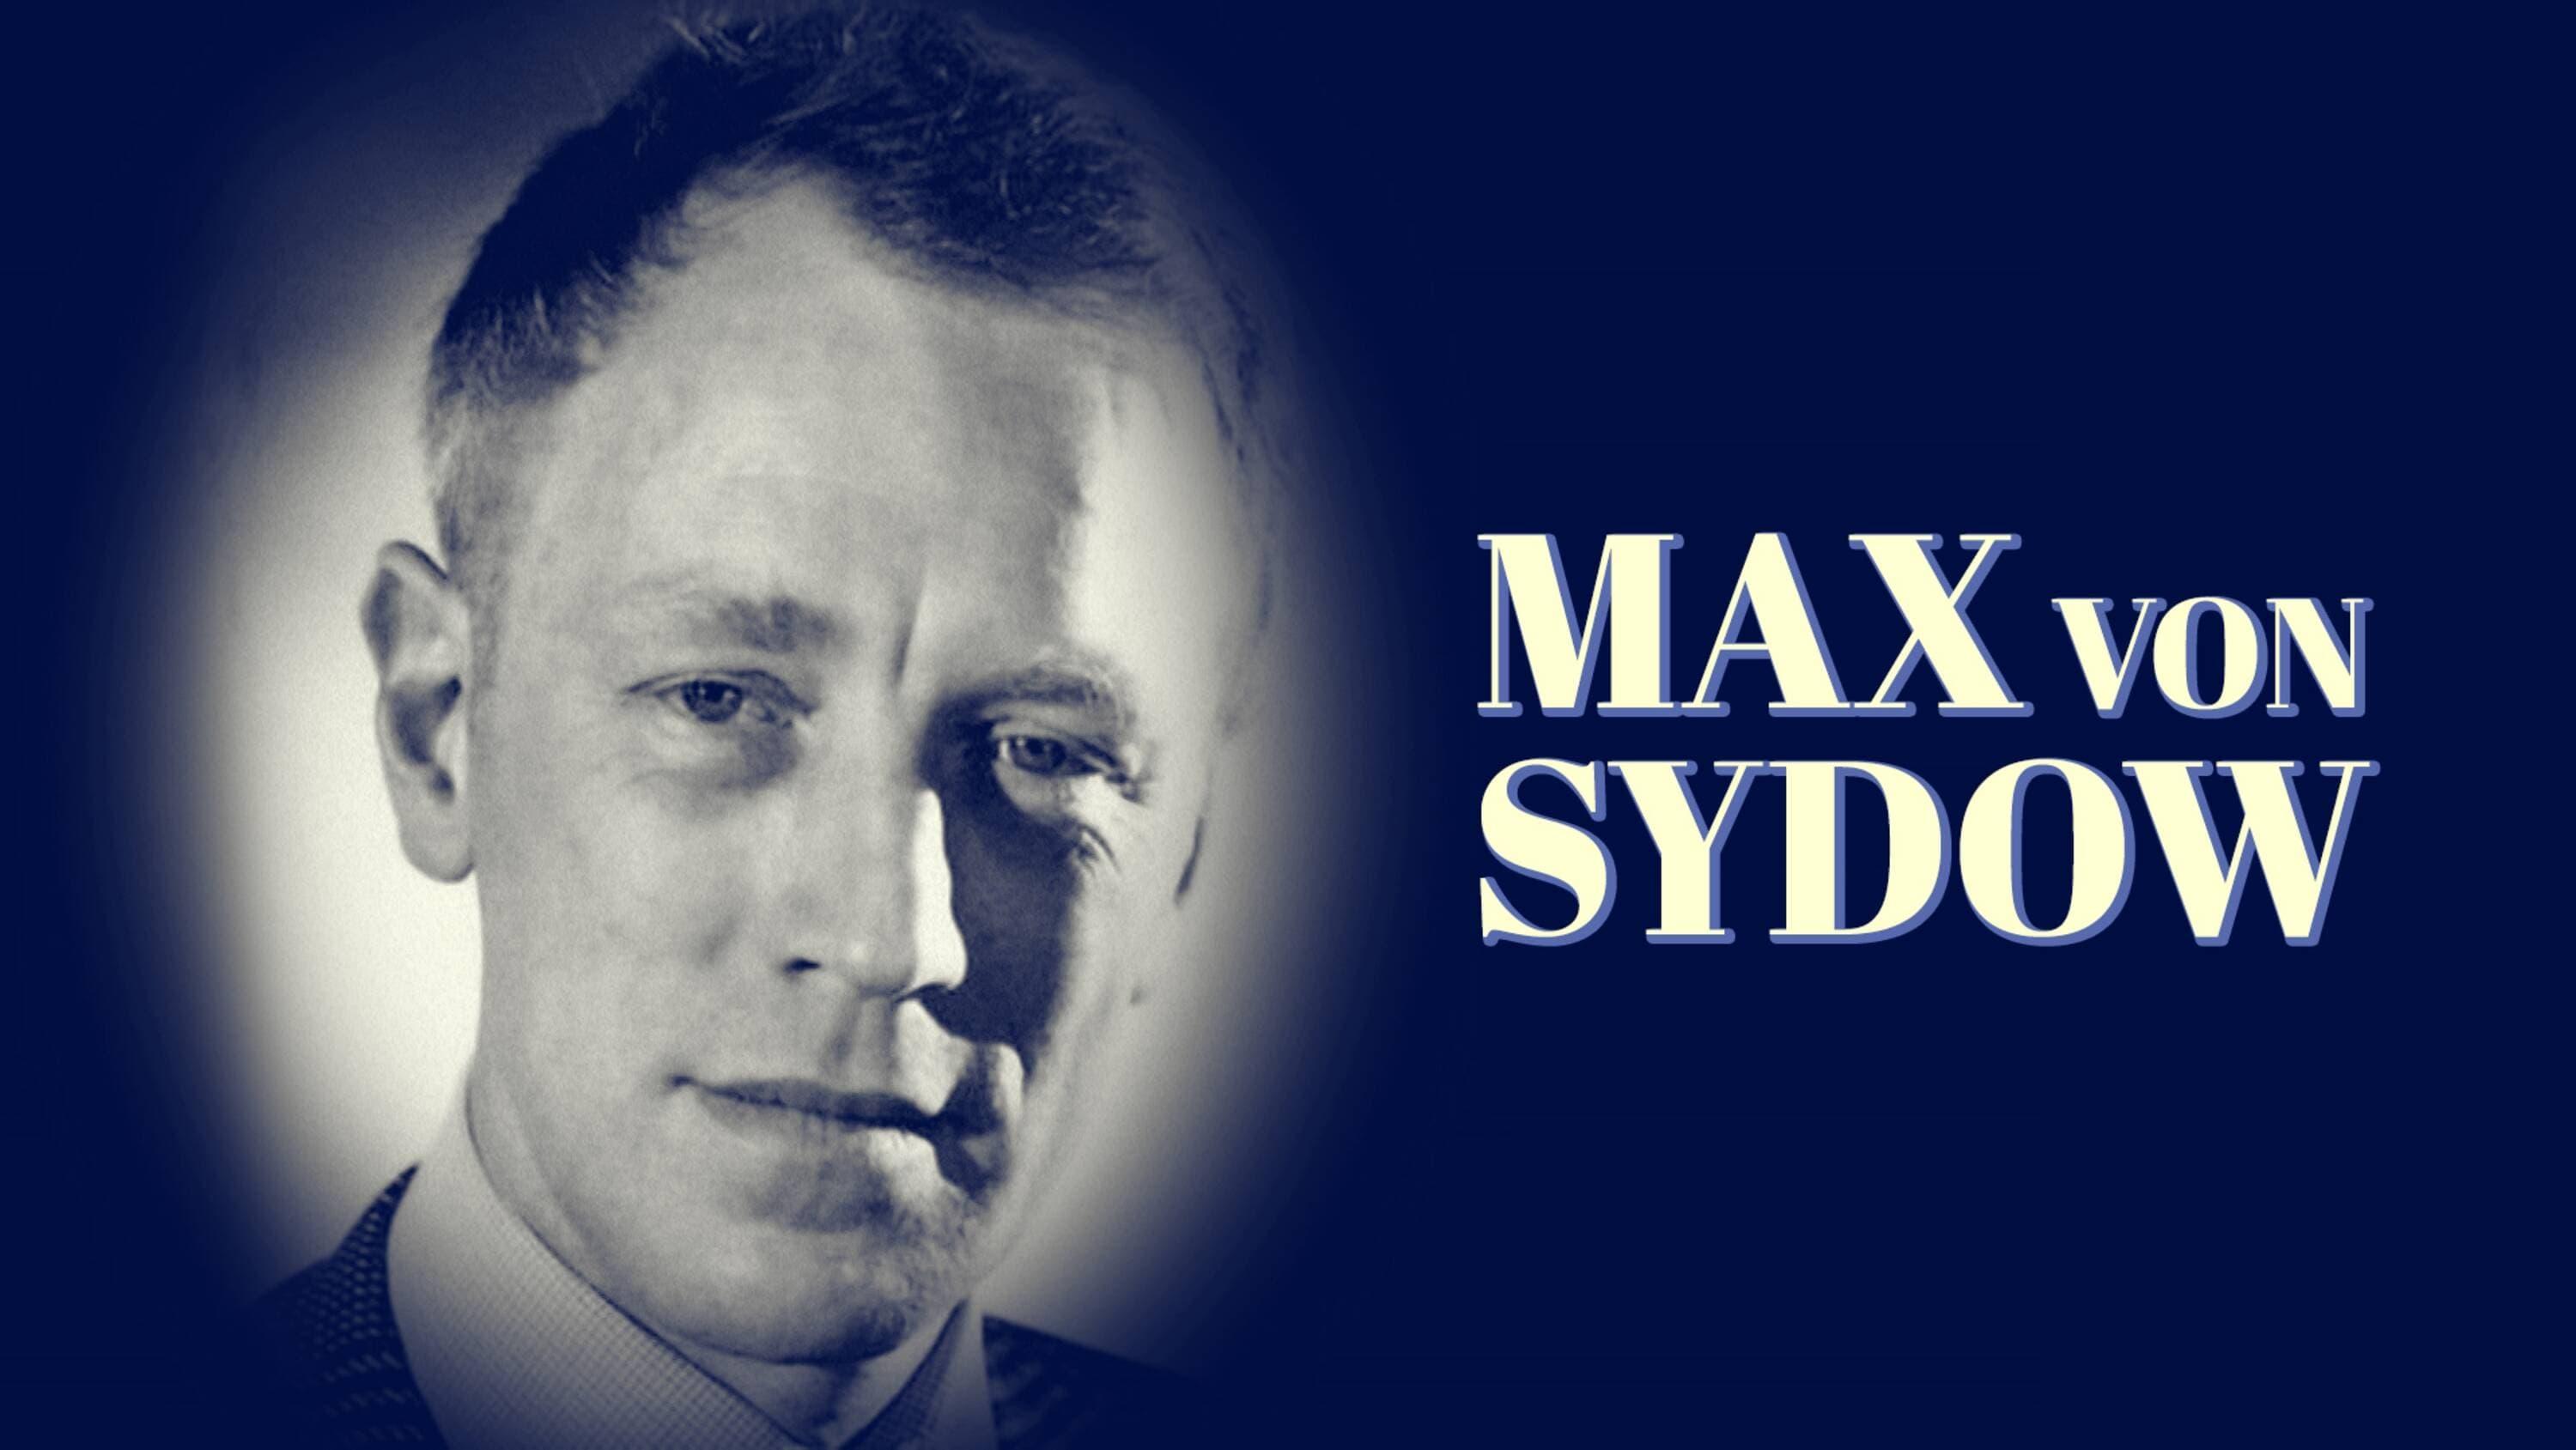 Max von Sydow backdrop